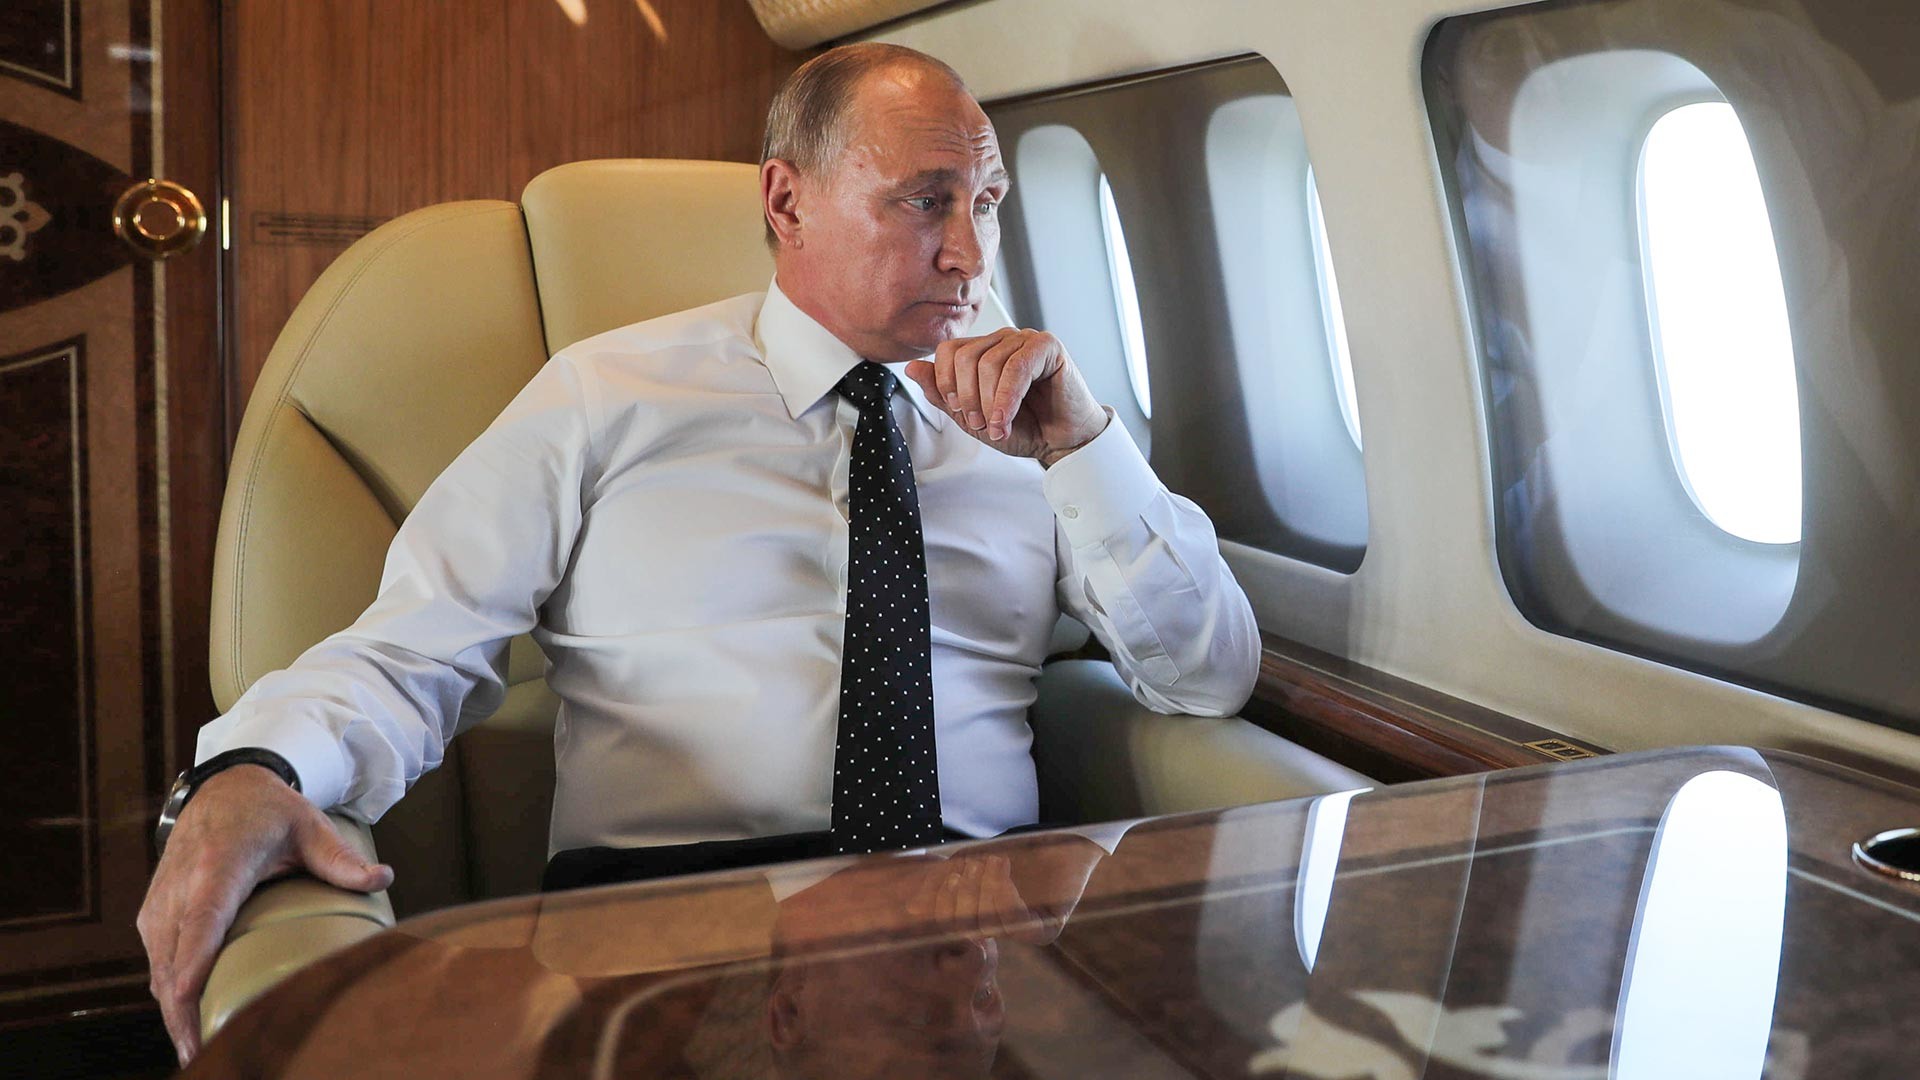 Vladimir Poutine à bord de son avion lors d'un vol vers la base aérienne de Hmeimim située en Syrie